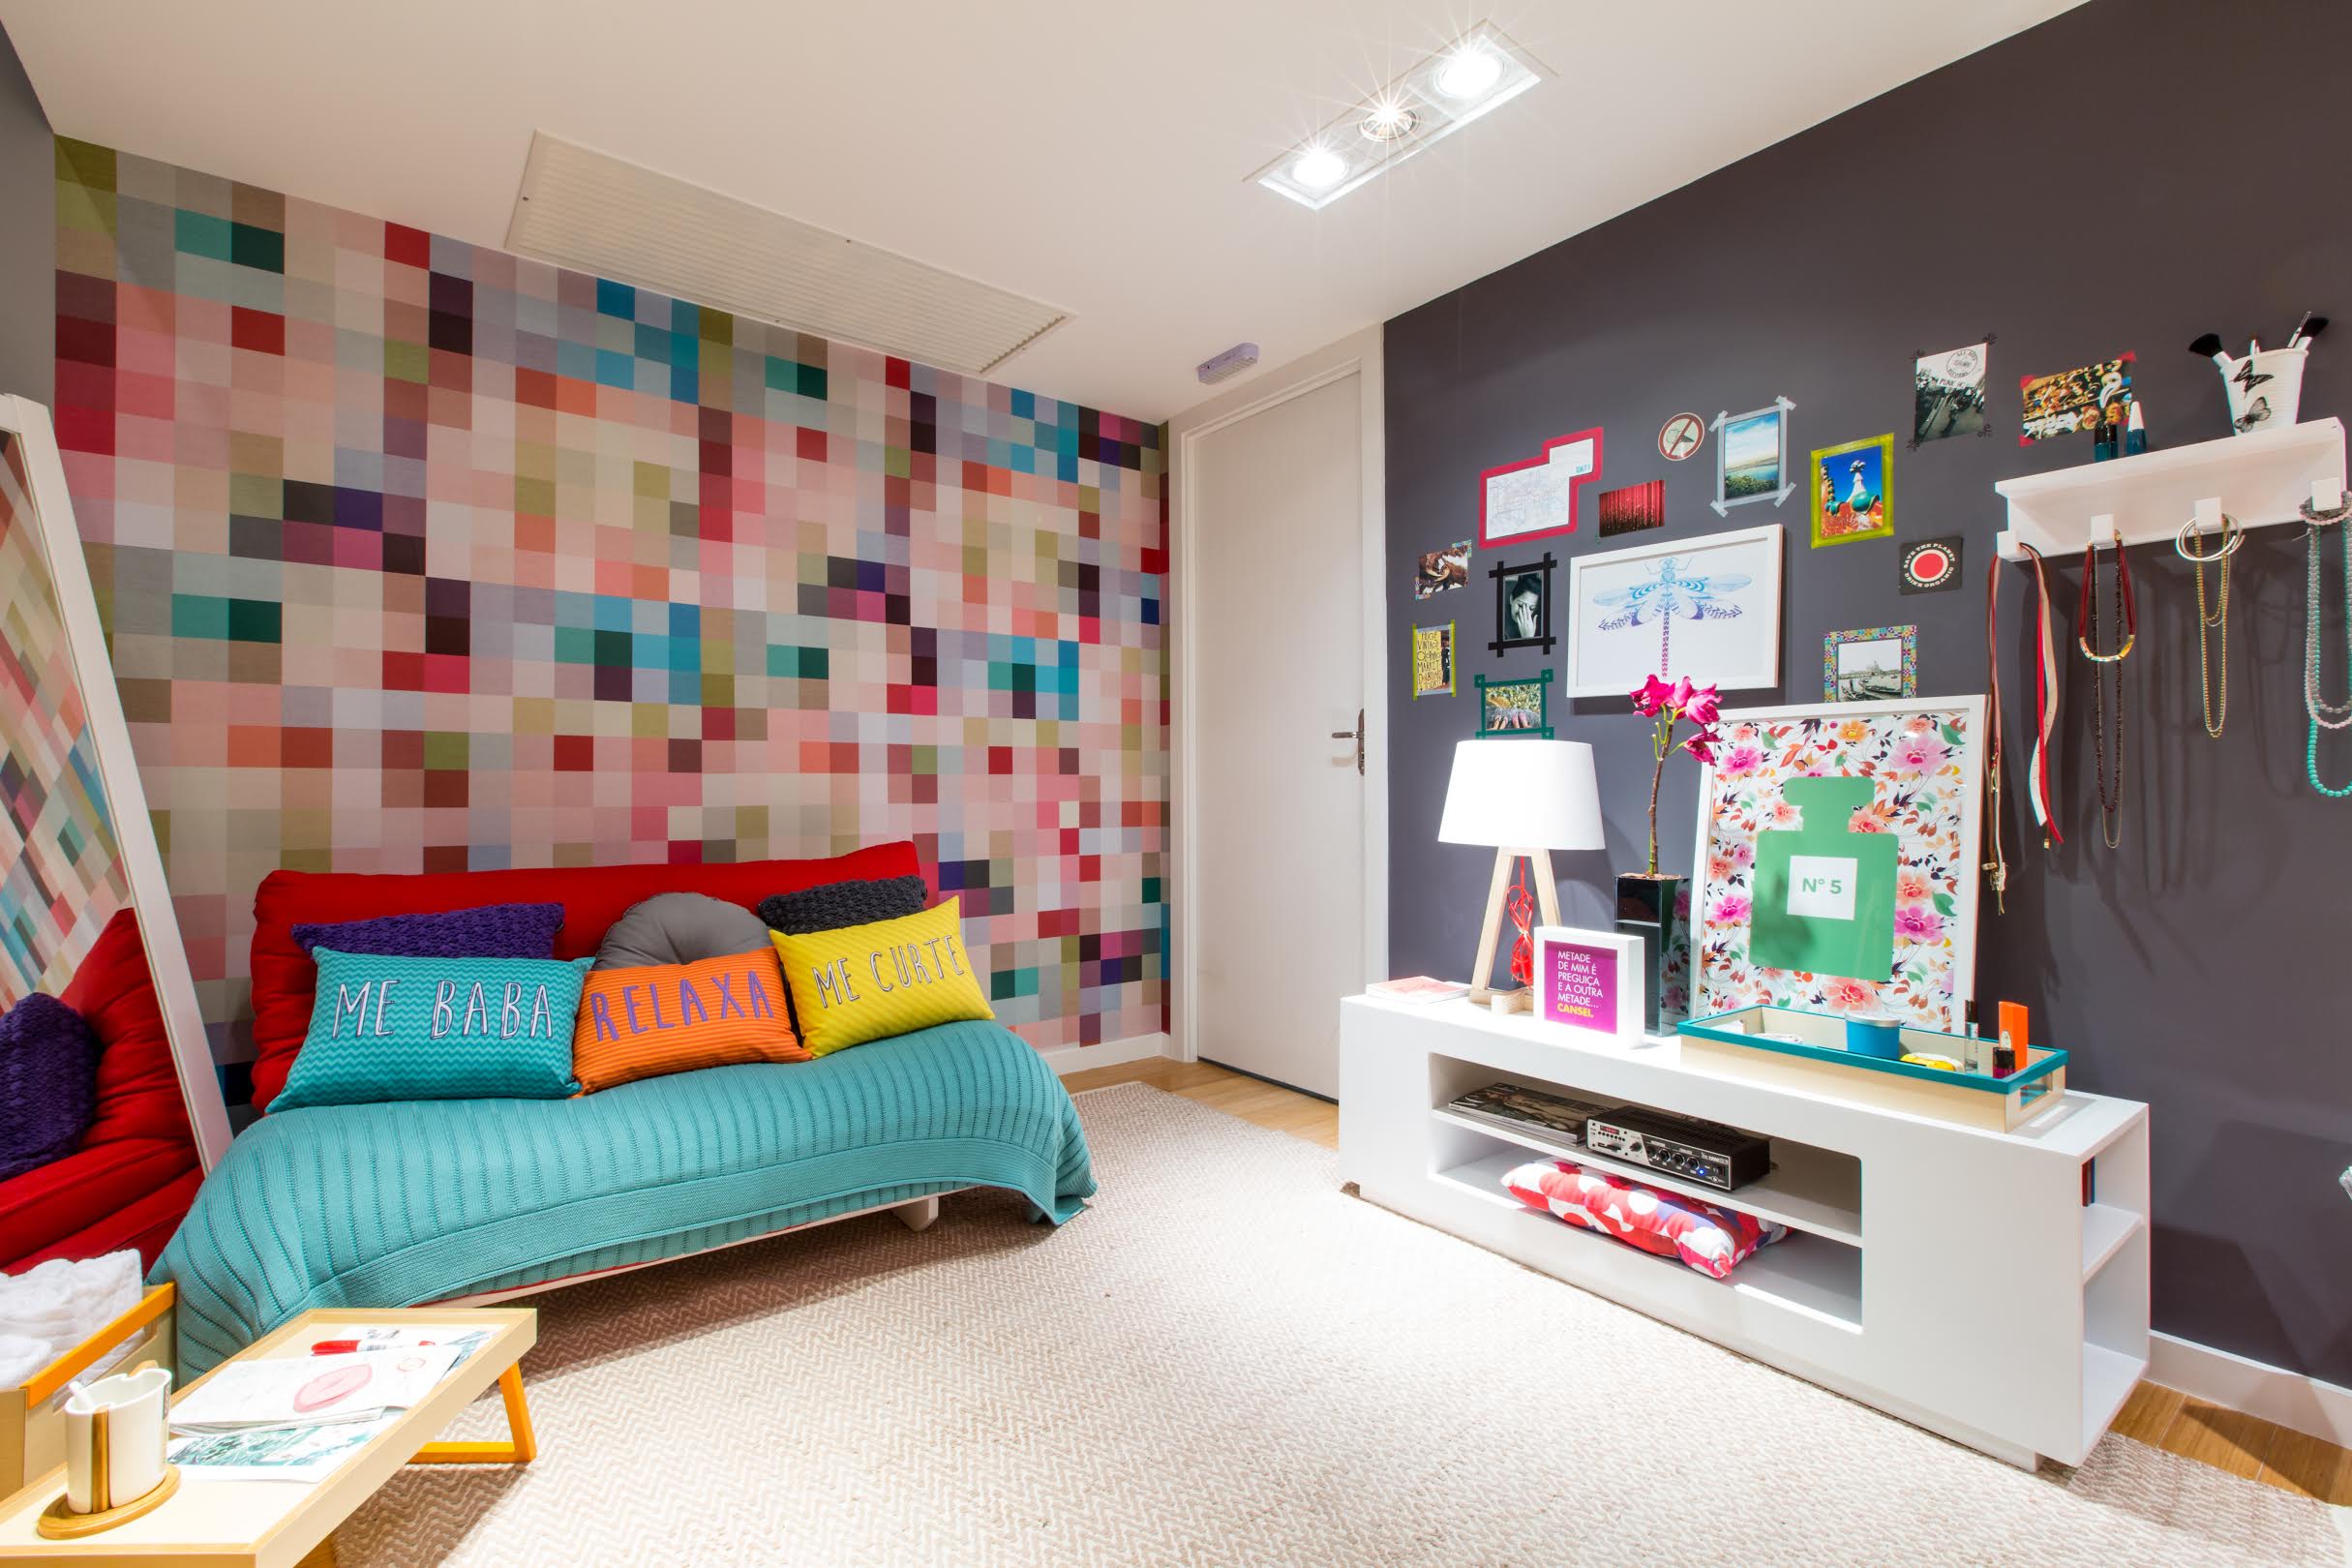 6 ideas ingeniosas para decorar una habitación juvenil